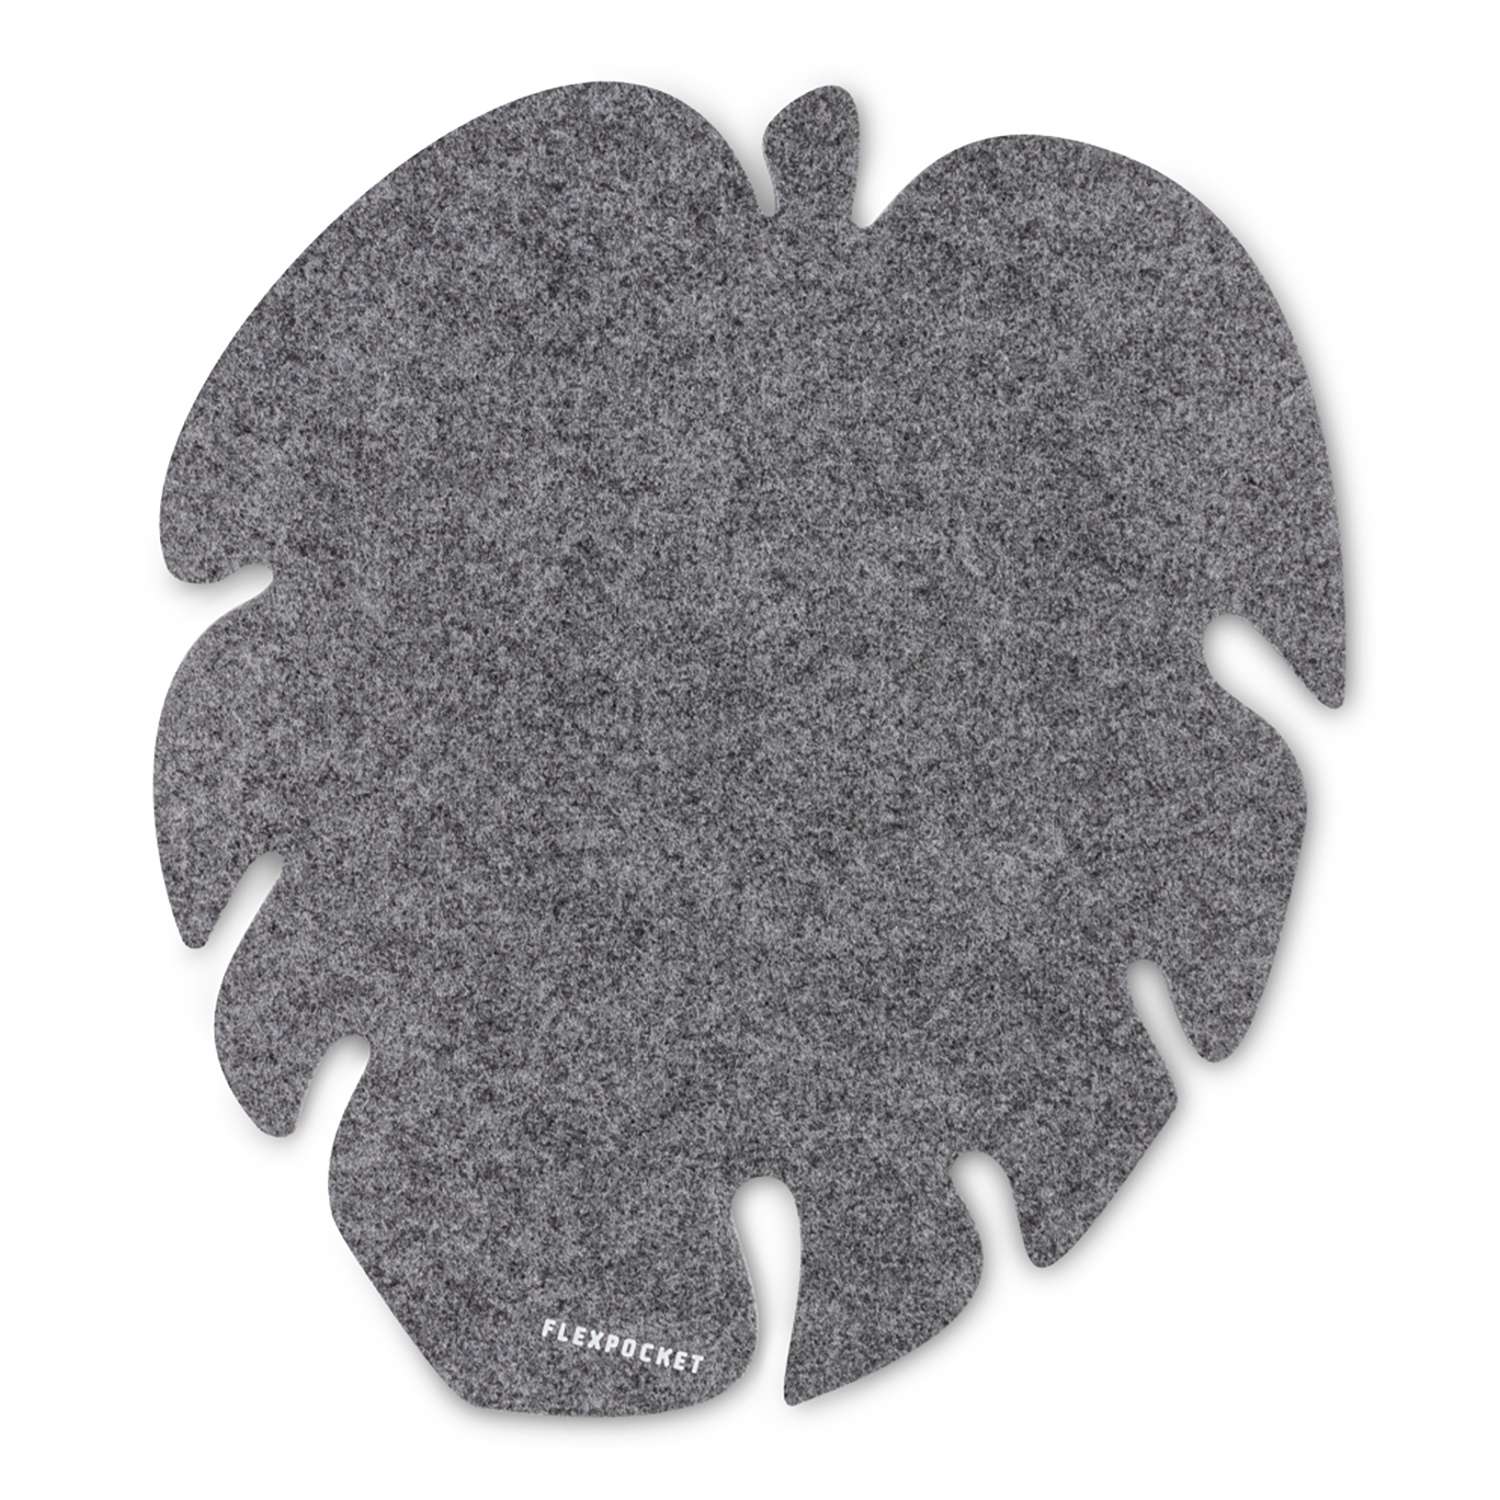 Настольный коврик Flexpocket для мыши в виде листа монстеры 250х250 серый - фото 1